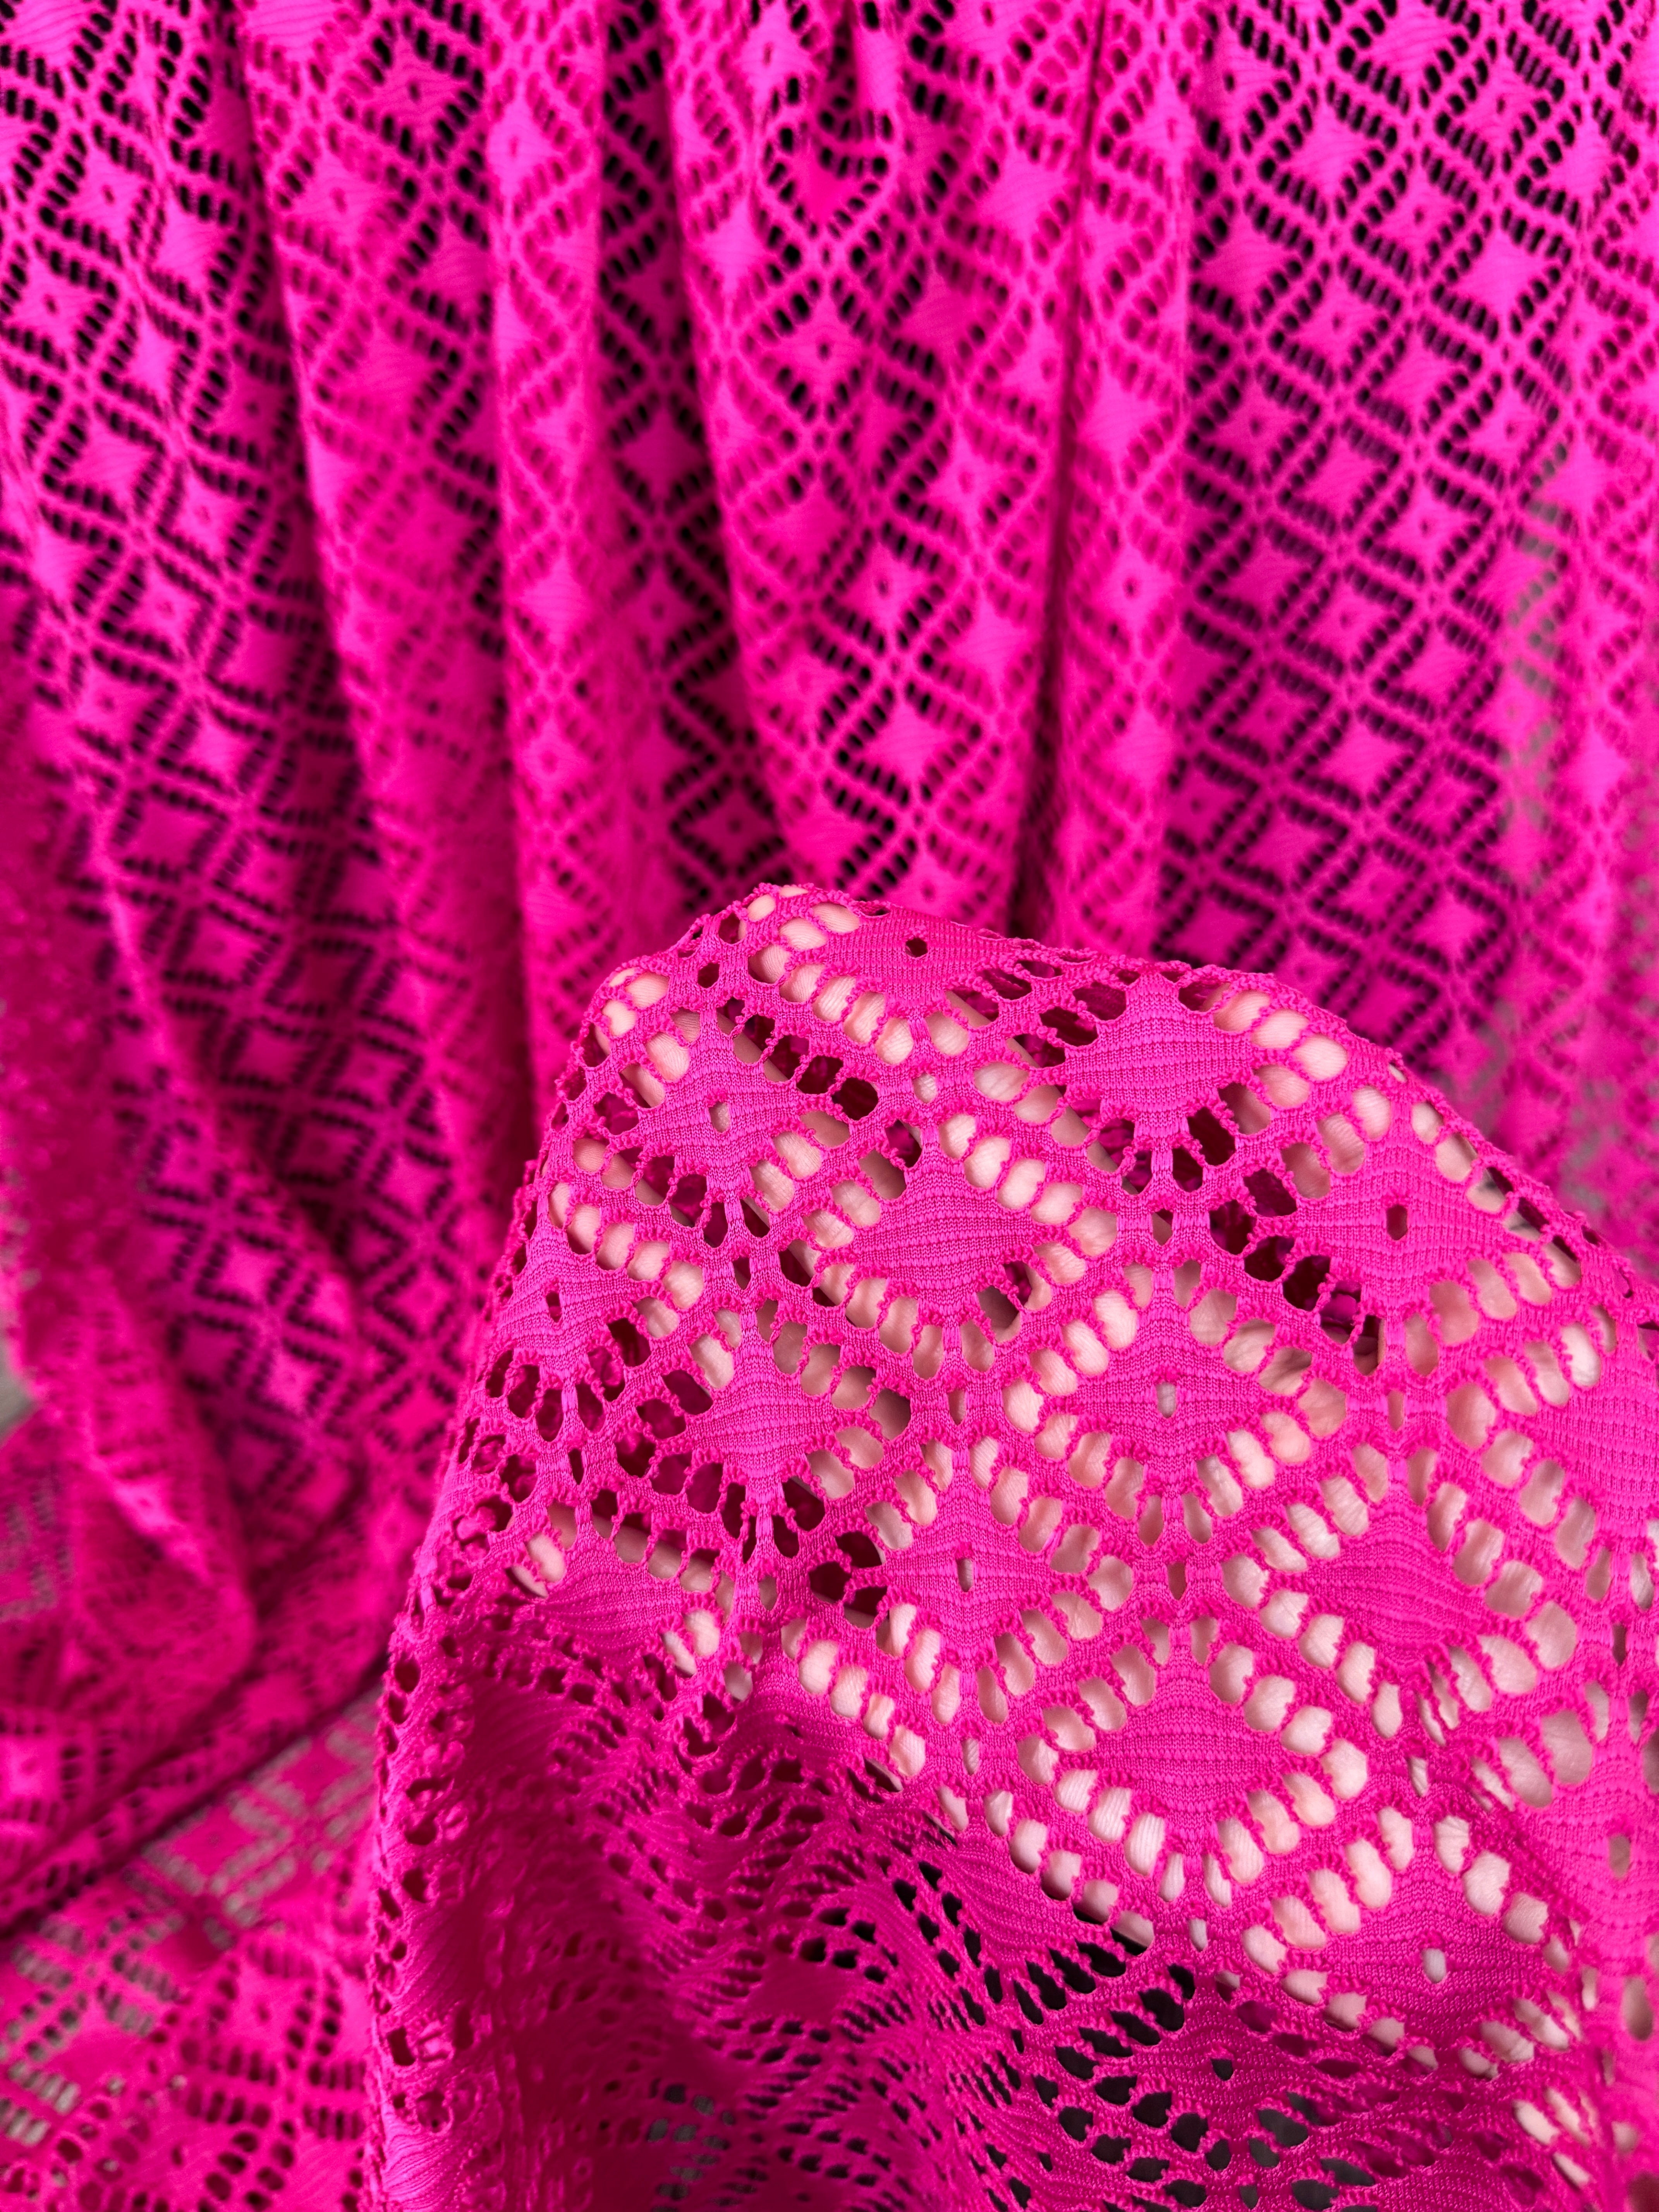 Hot Pink Crochet Hollow Out Knit, pink Crochet Hollow Out Knit, dark pink Crochet Hollow Out Knit, light pink Crochet Hollow Out Knit, fuchsia Crochet Hollow Out Knit, Crochet Hollow Out Knit on discount